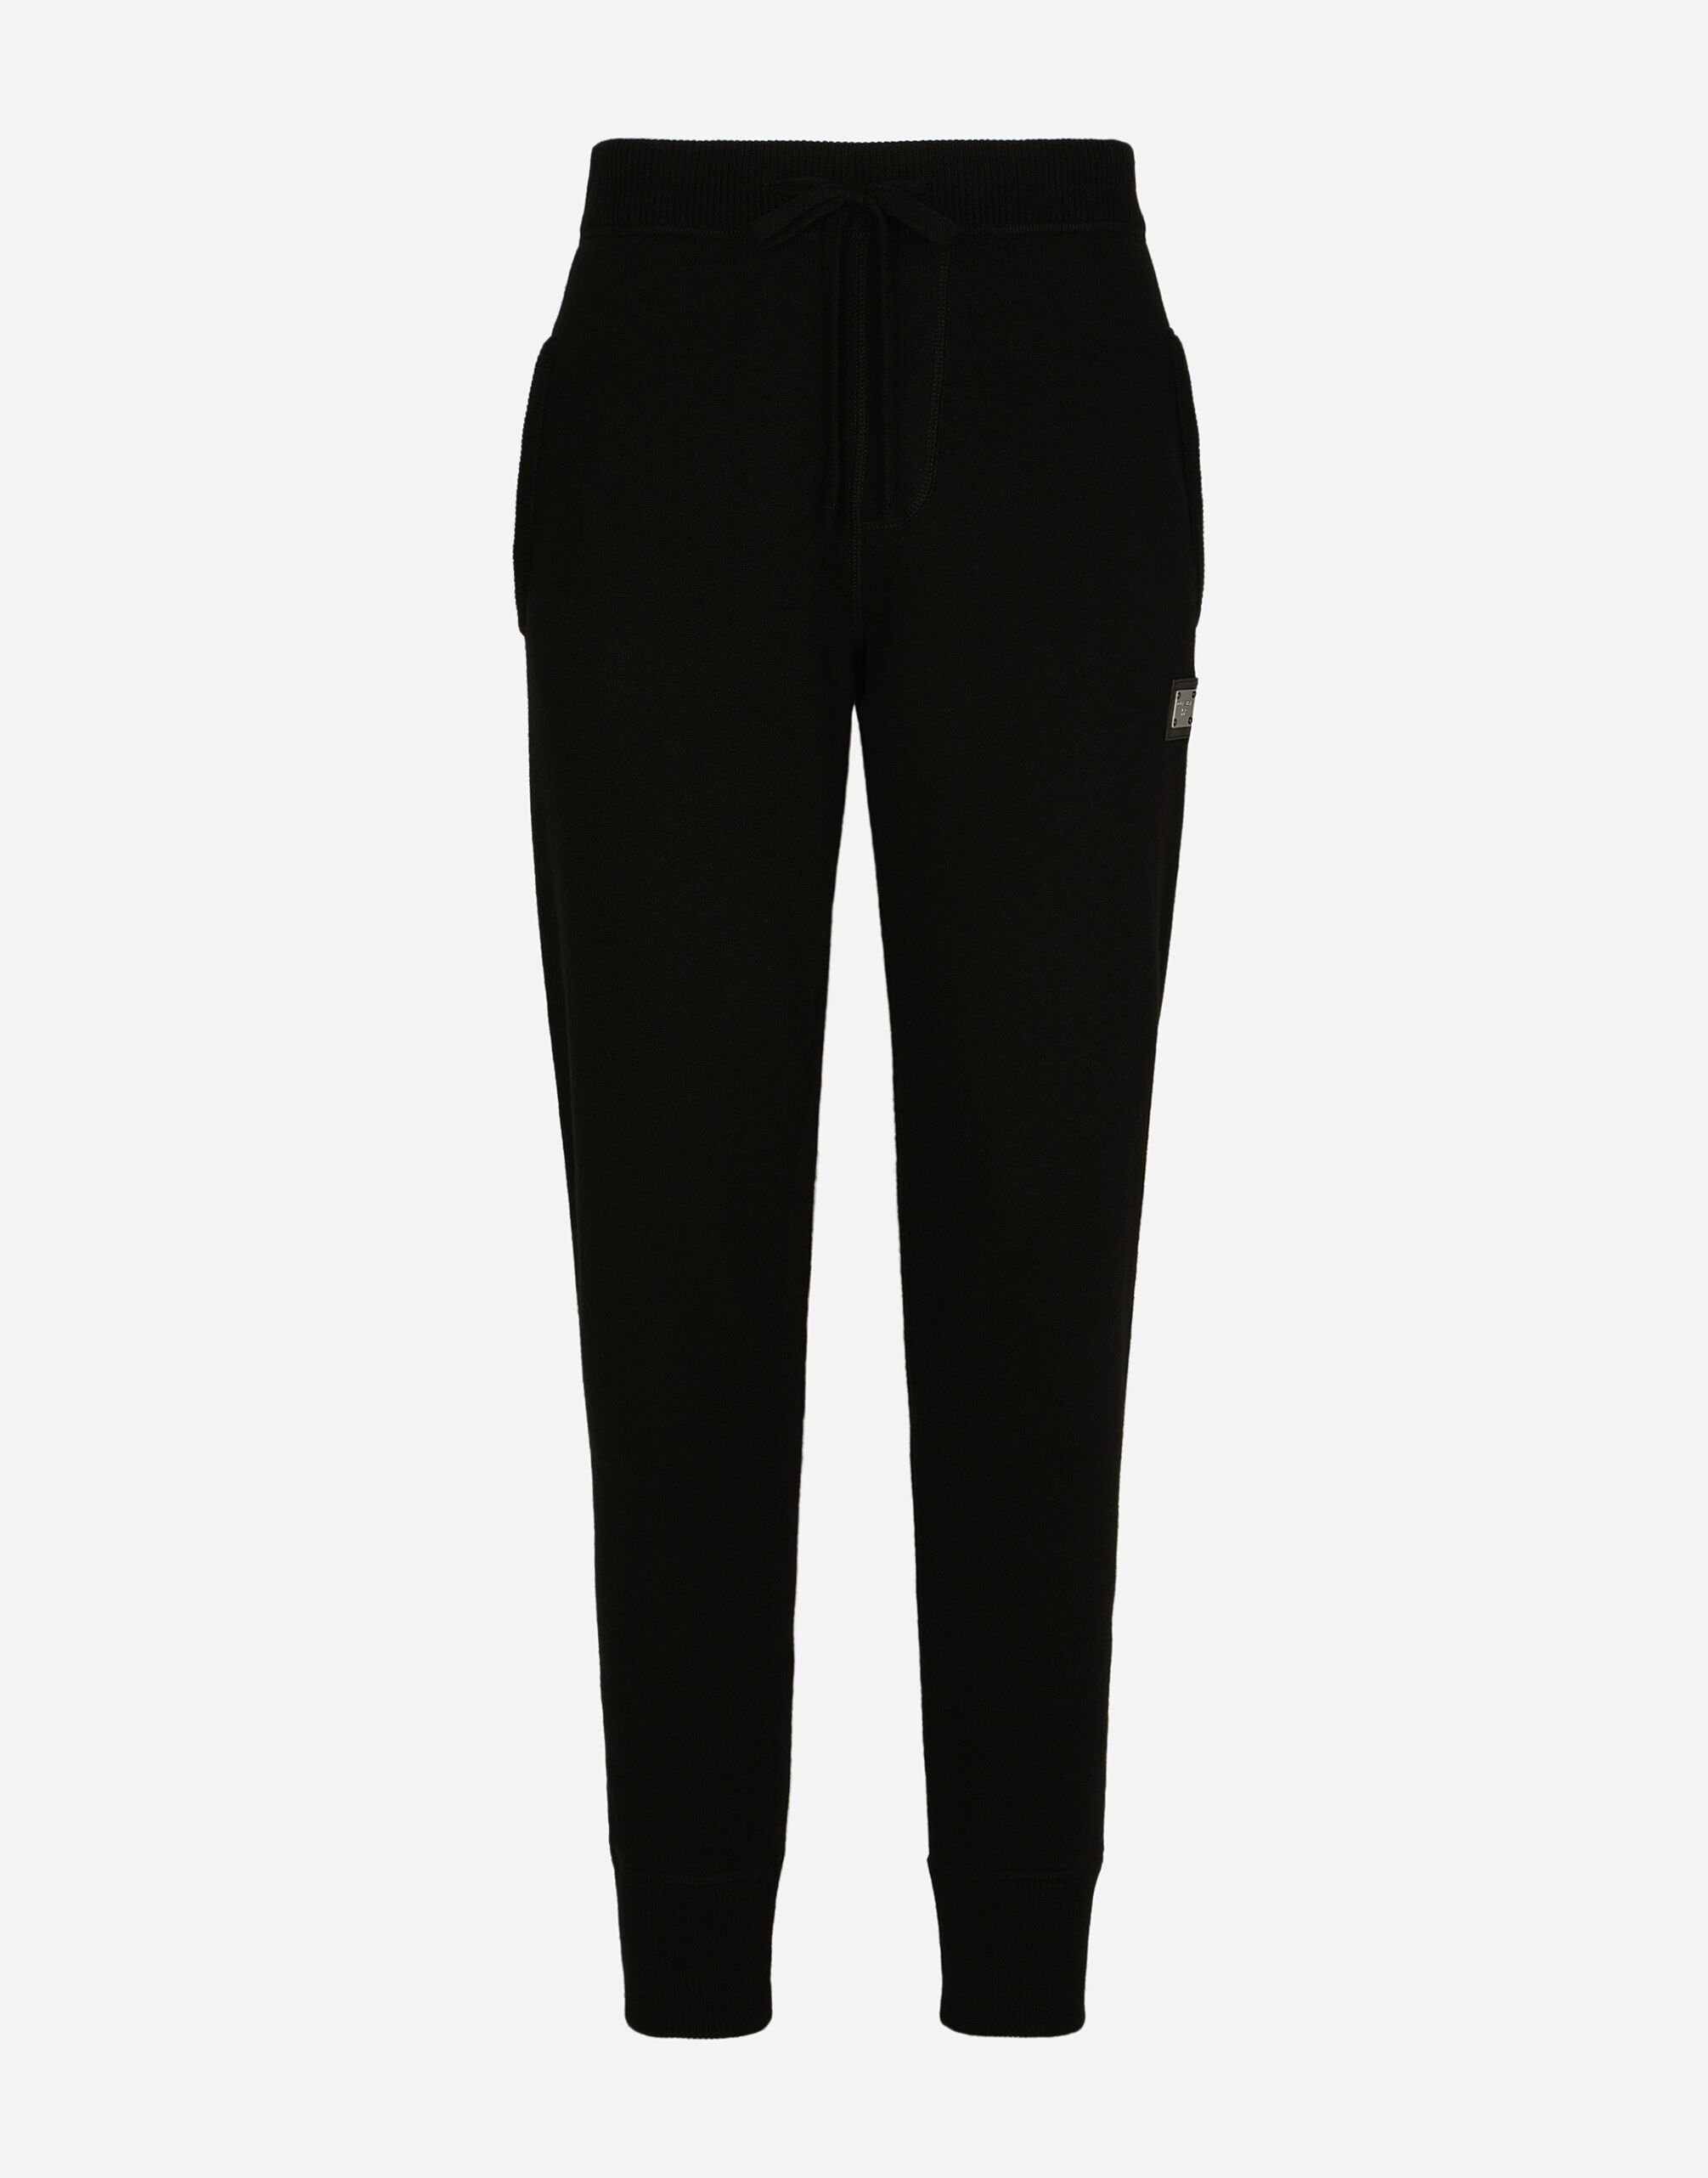 Dolce & Gabbana سروال للركض محاك من صوف وكشمير أسود VG6184VN187